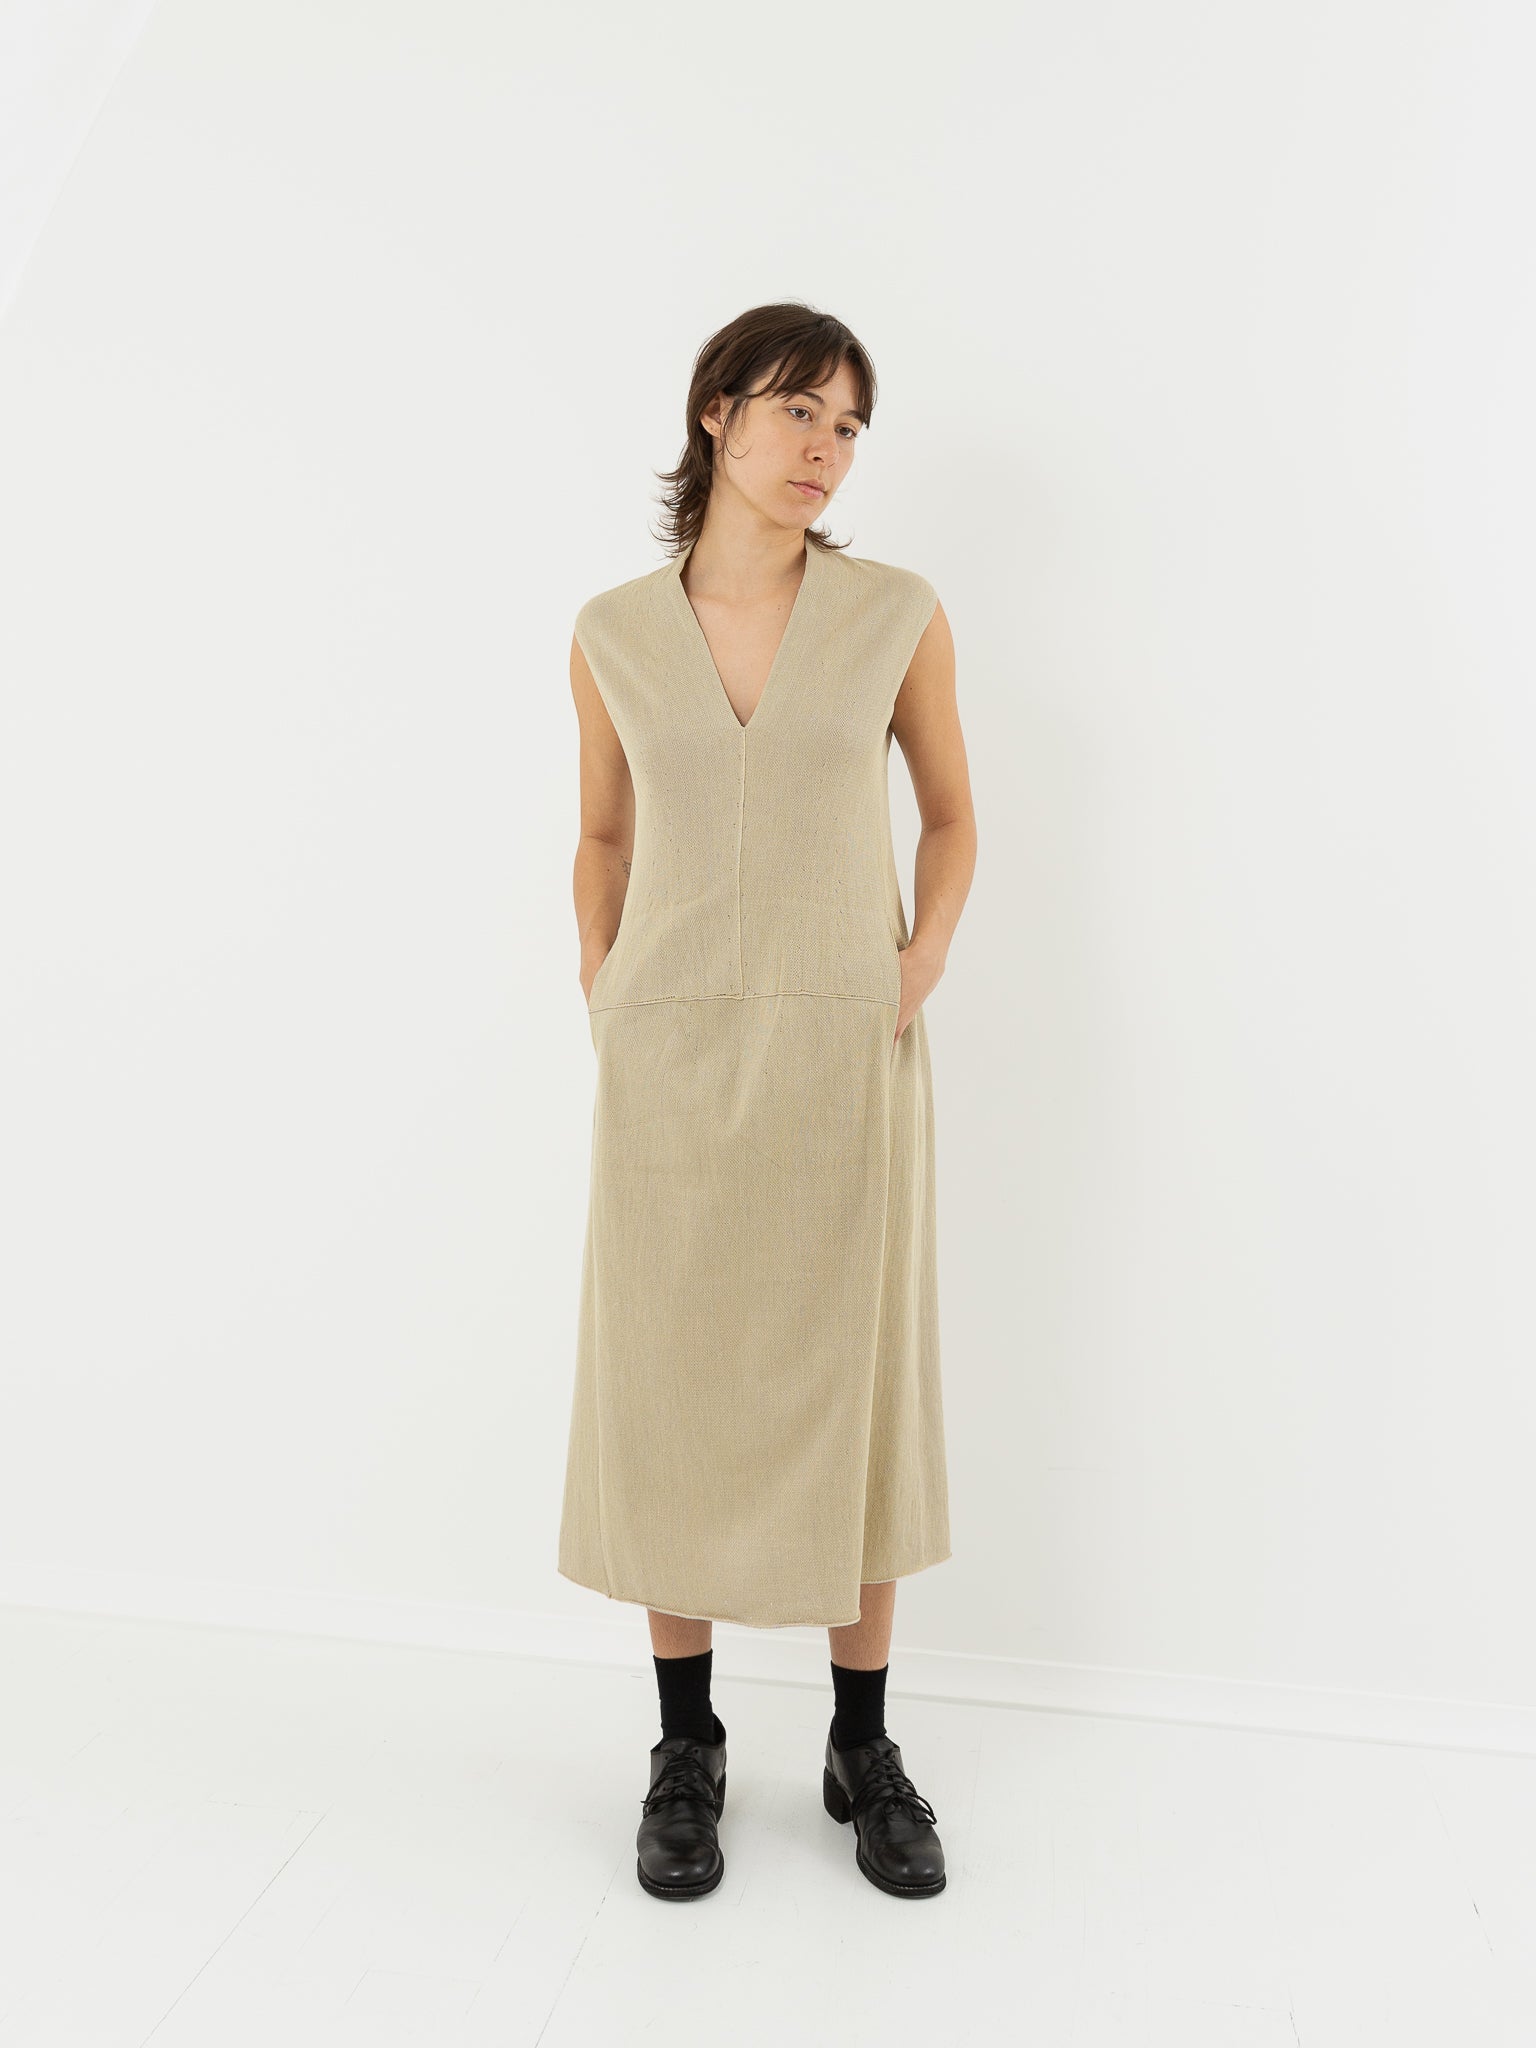 Boboutic Sleeveless Dress, Sulfur - Worthwhile, Inc.